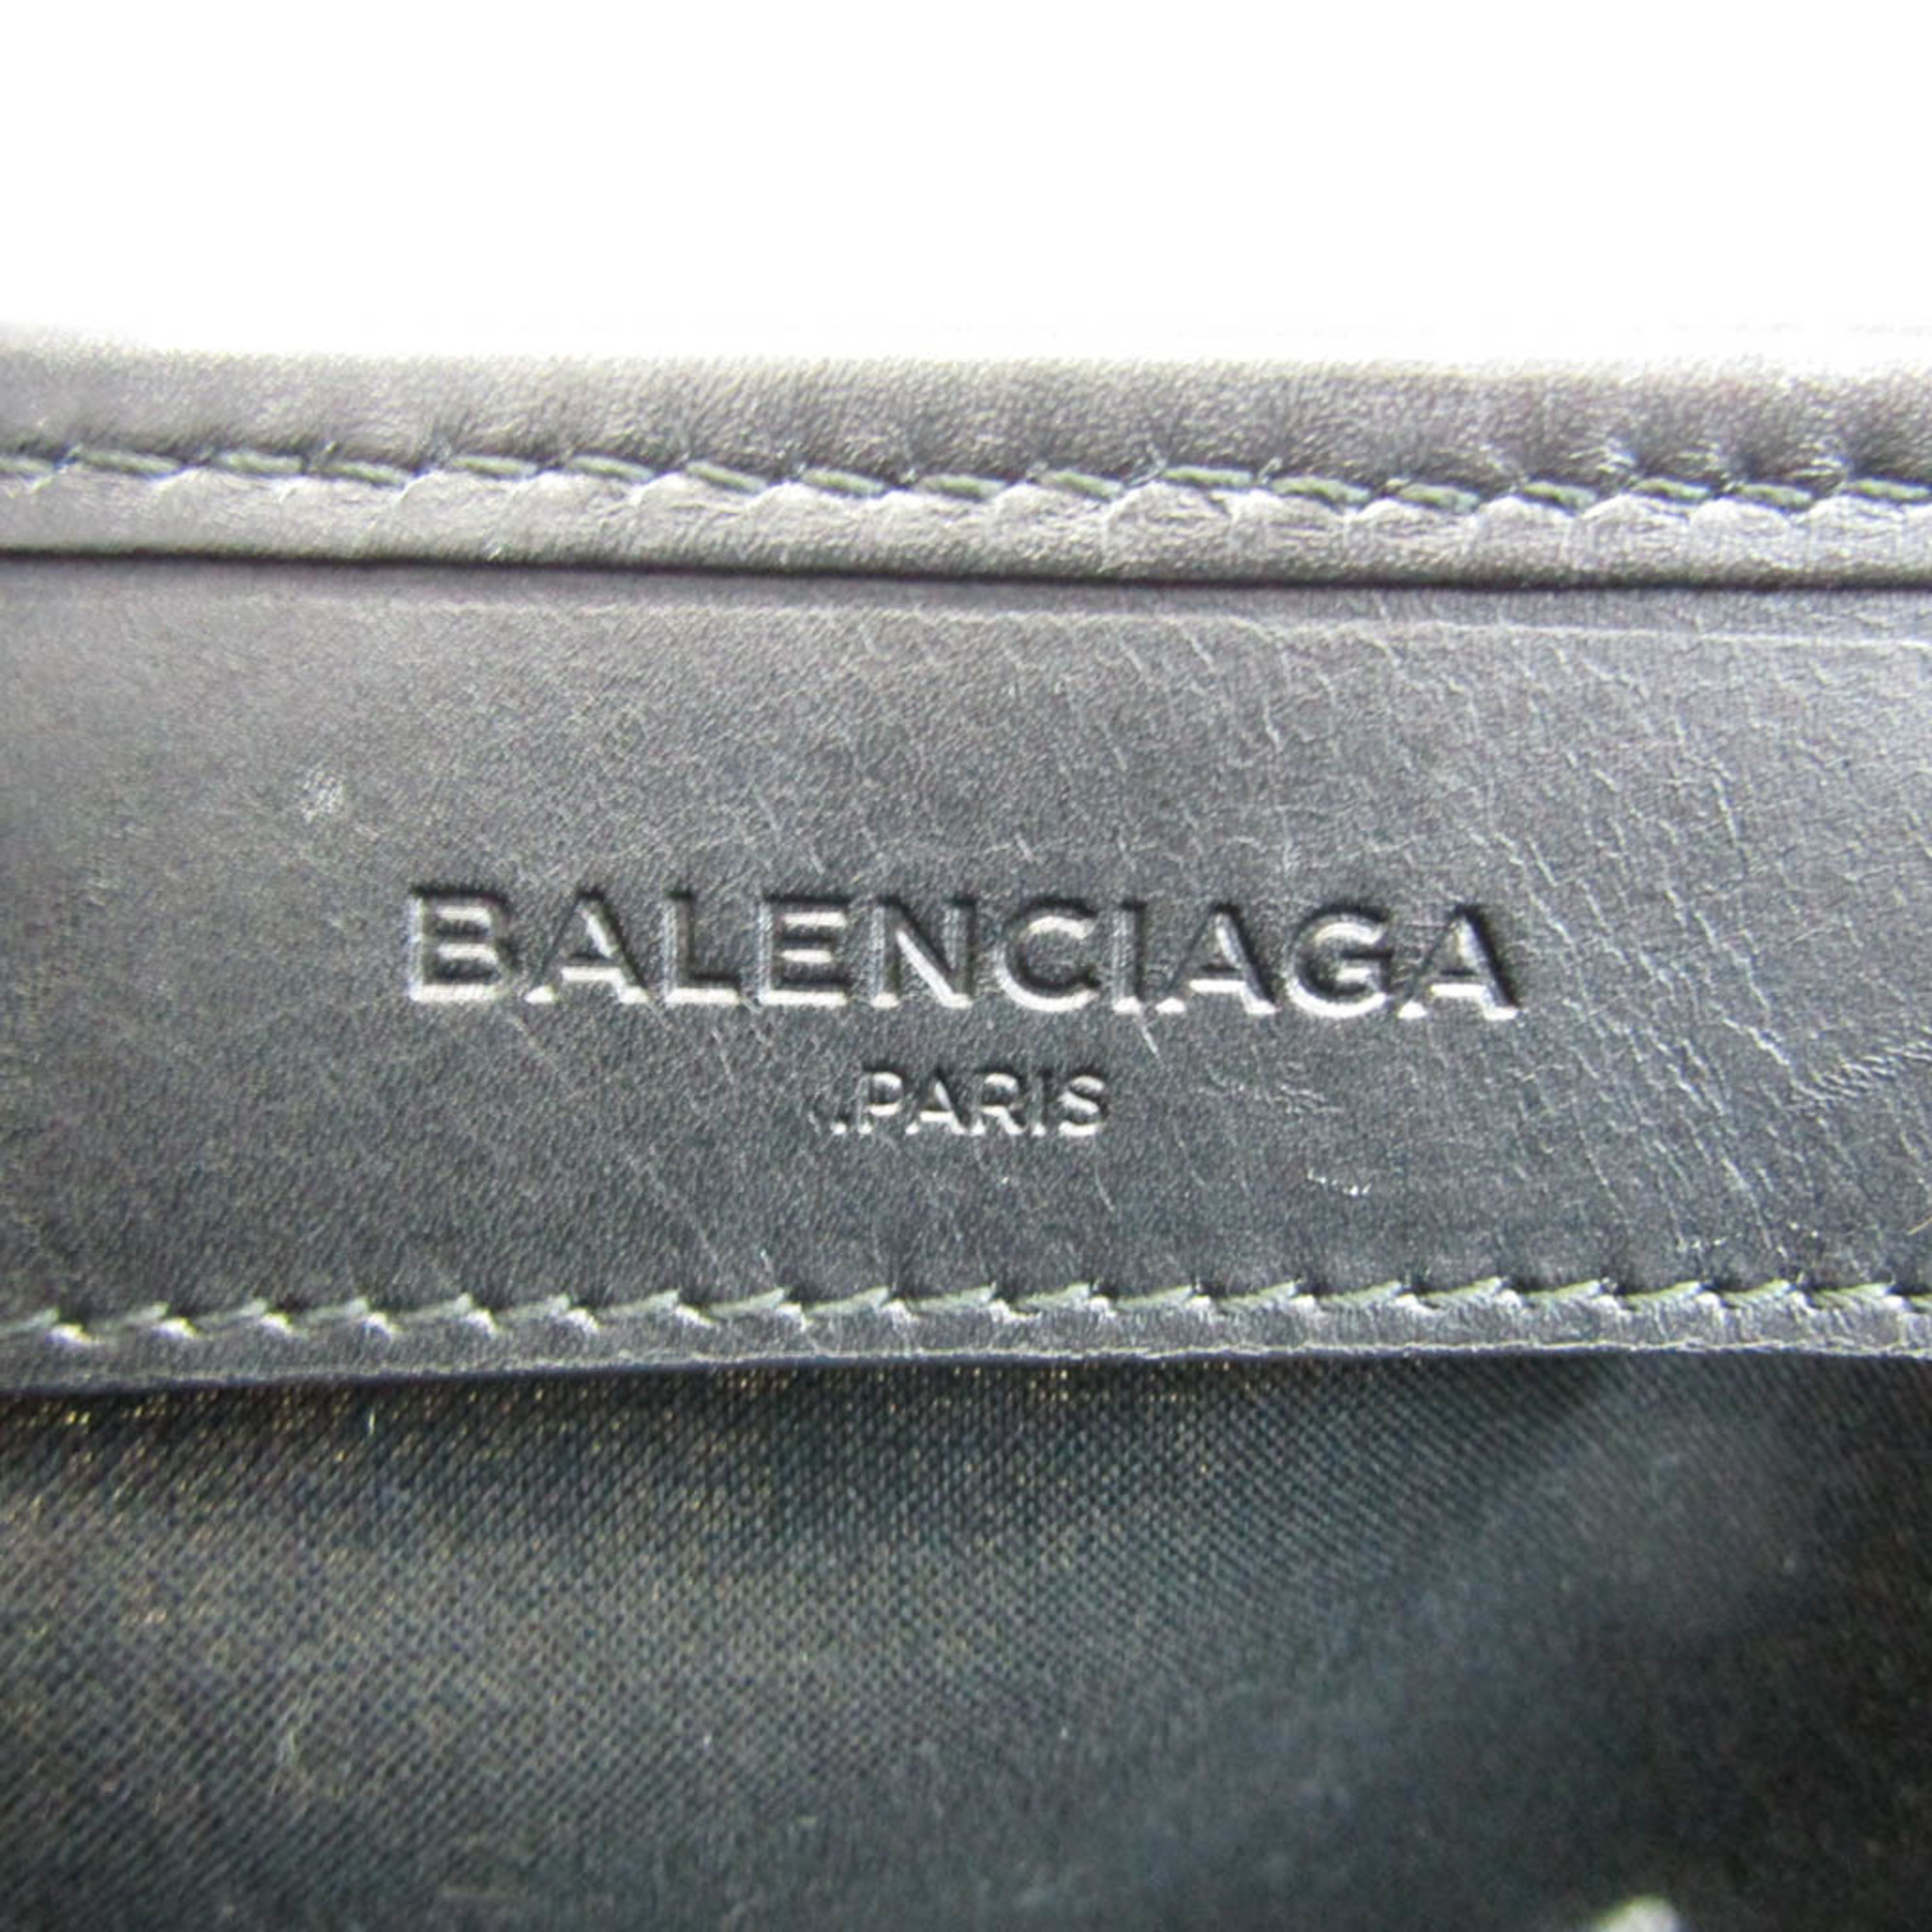 Balenciaga Navy Cabas S 339933 Women's Canvas,Leather Handbag Black,Off-white